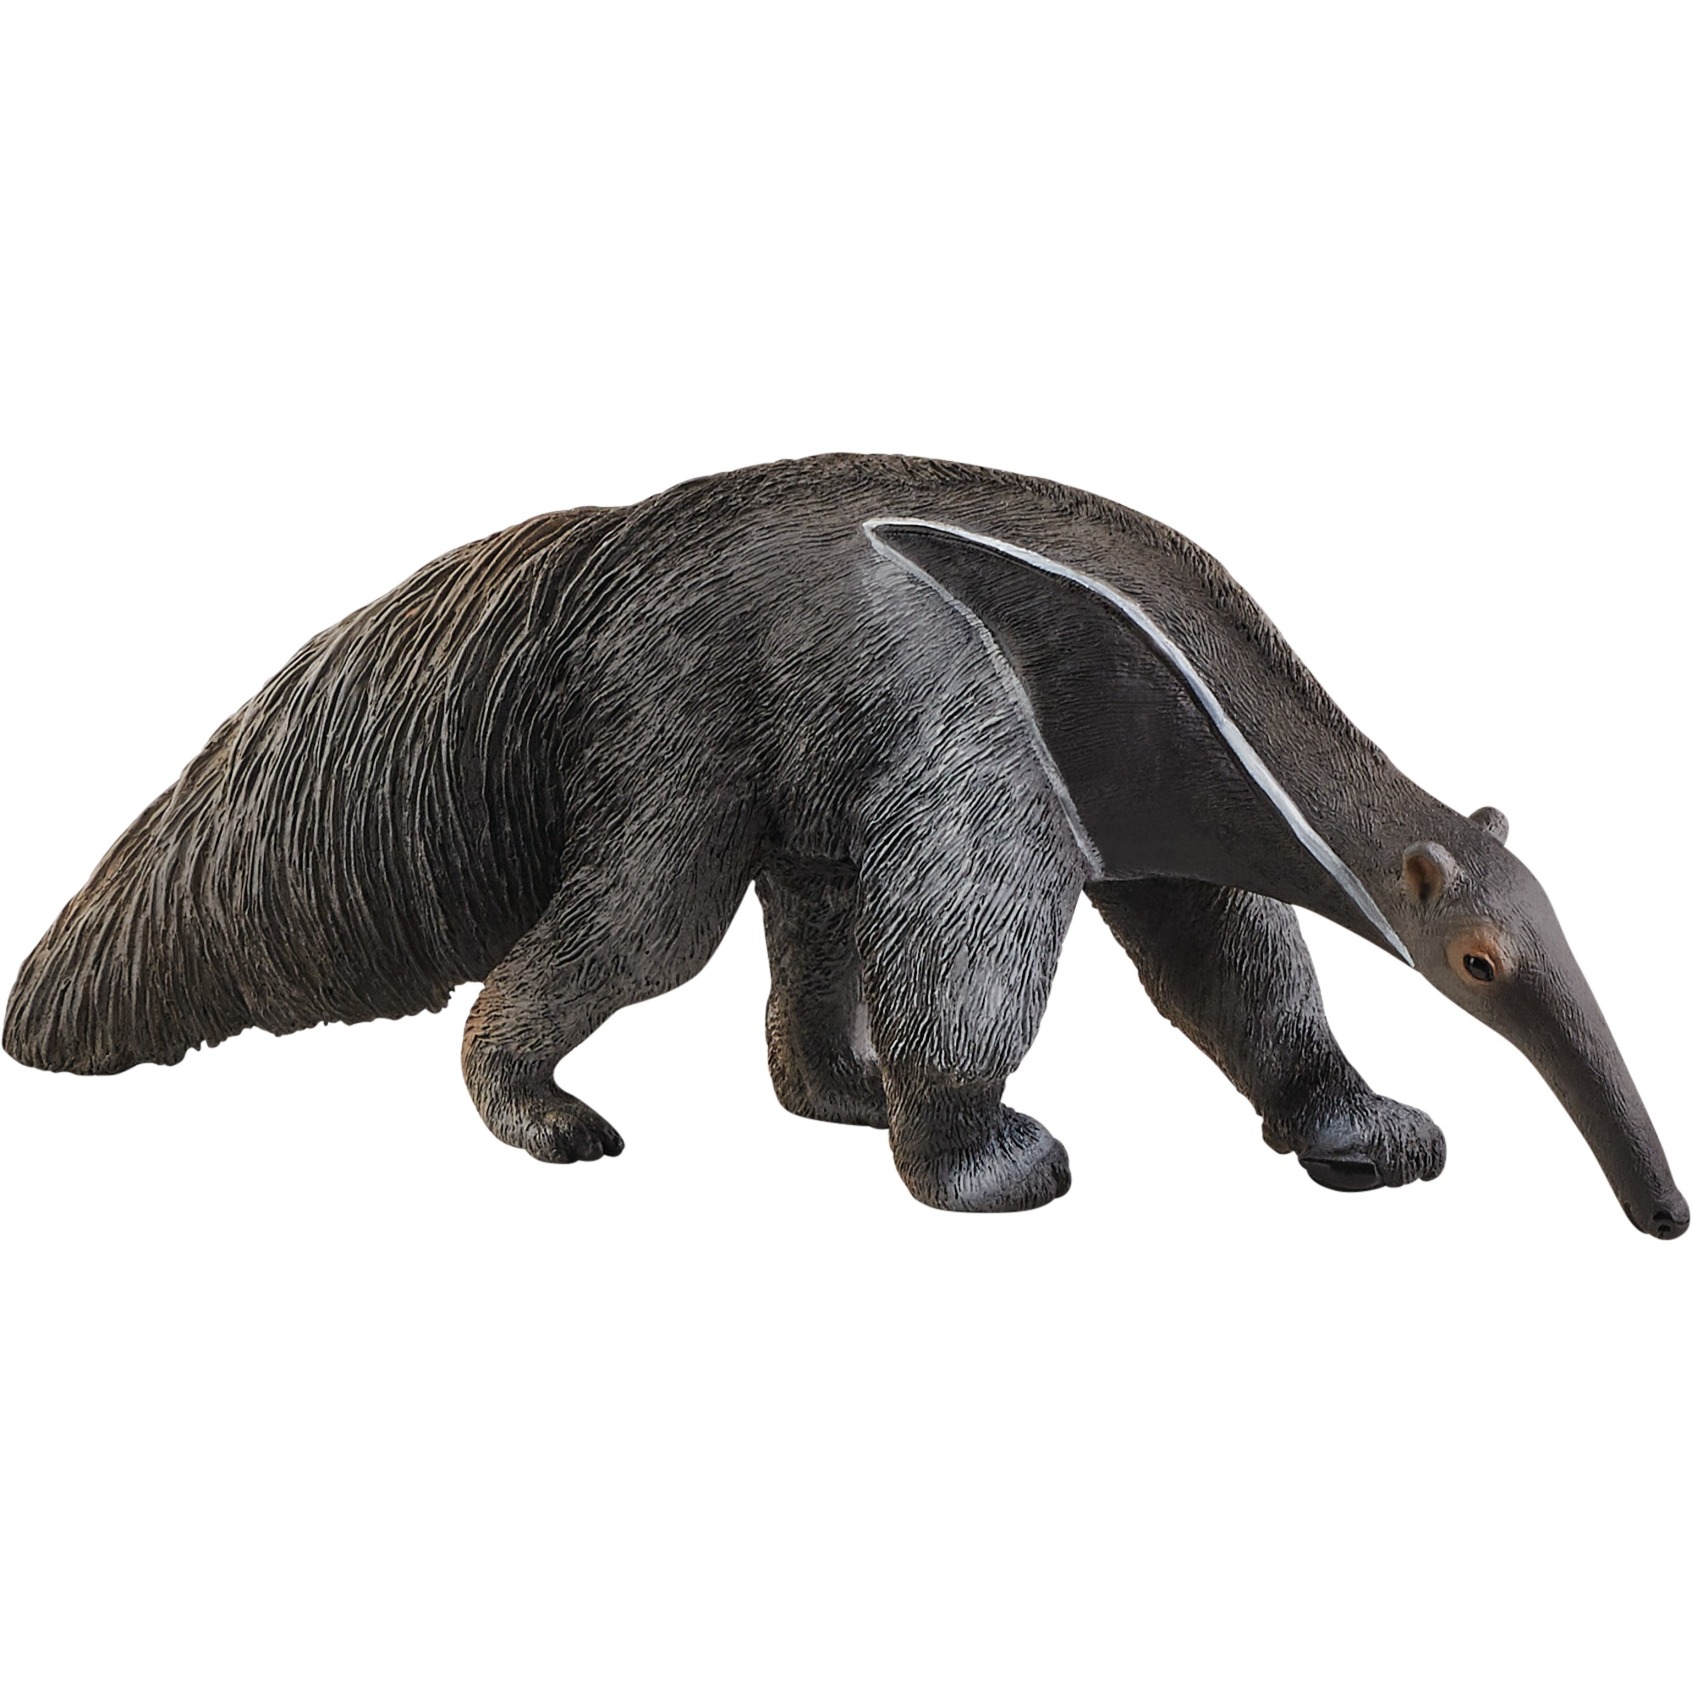 Image of Alternate - Ameisenbär, Spielfigur online einkaufen bei Alternate